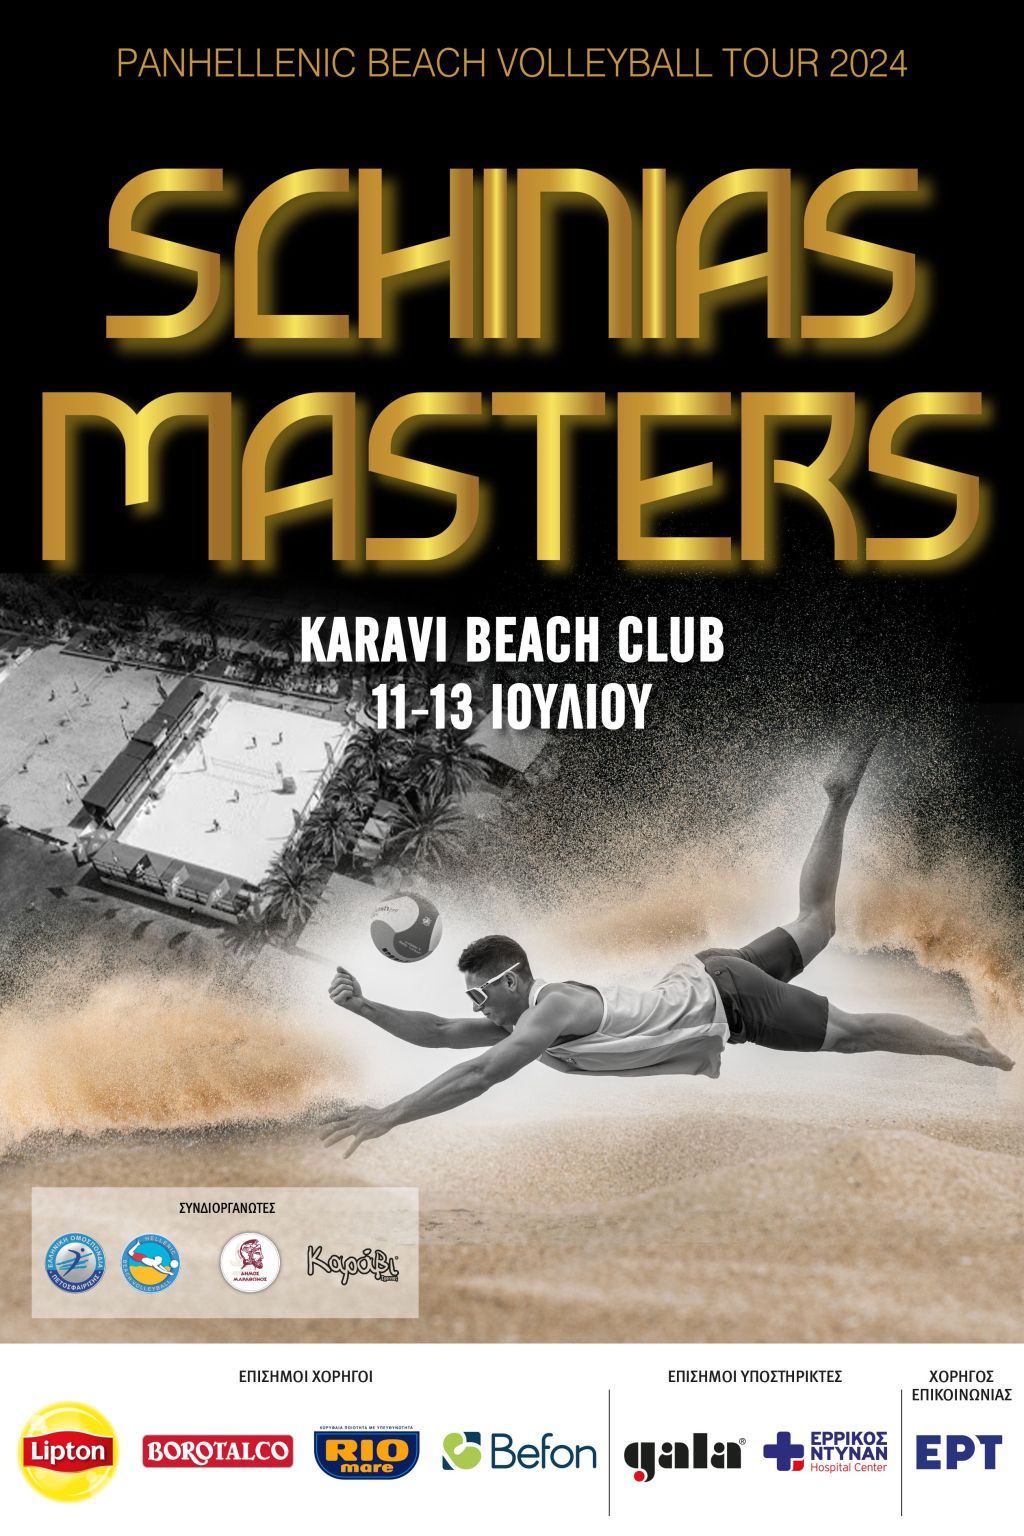 Ο Σχινιάς και το Karavi Club ετοιμάζονται για το πανελλήνιο σιρκουί beach volley